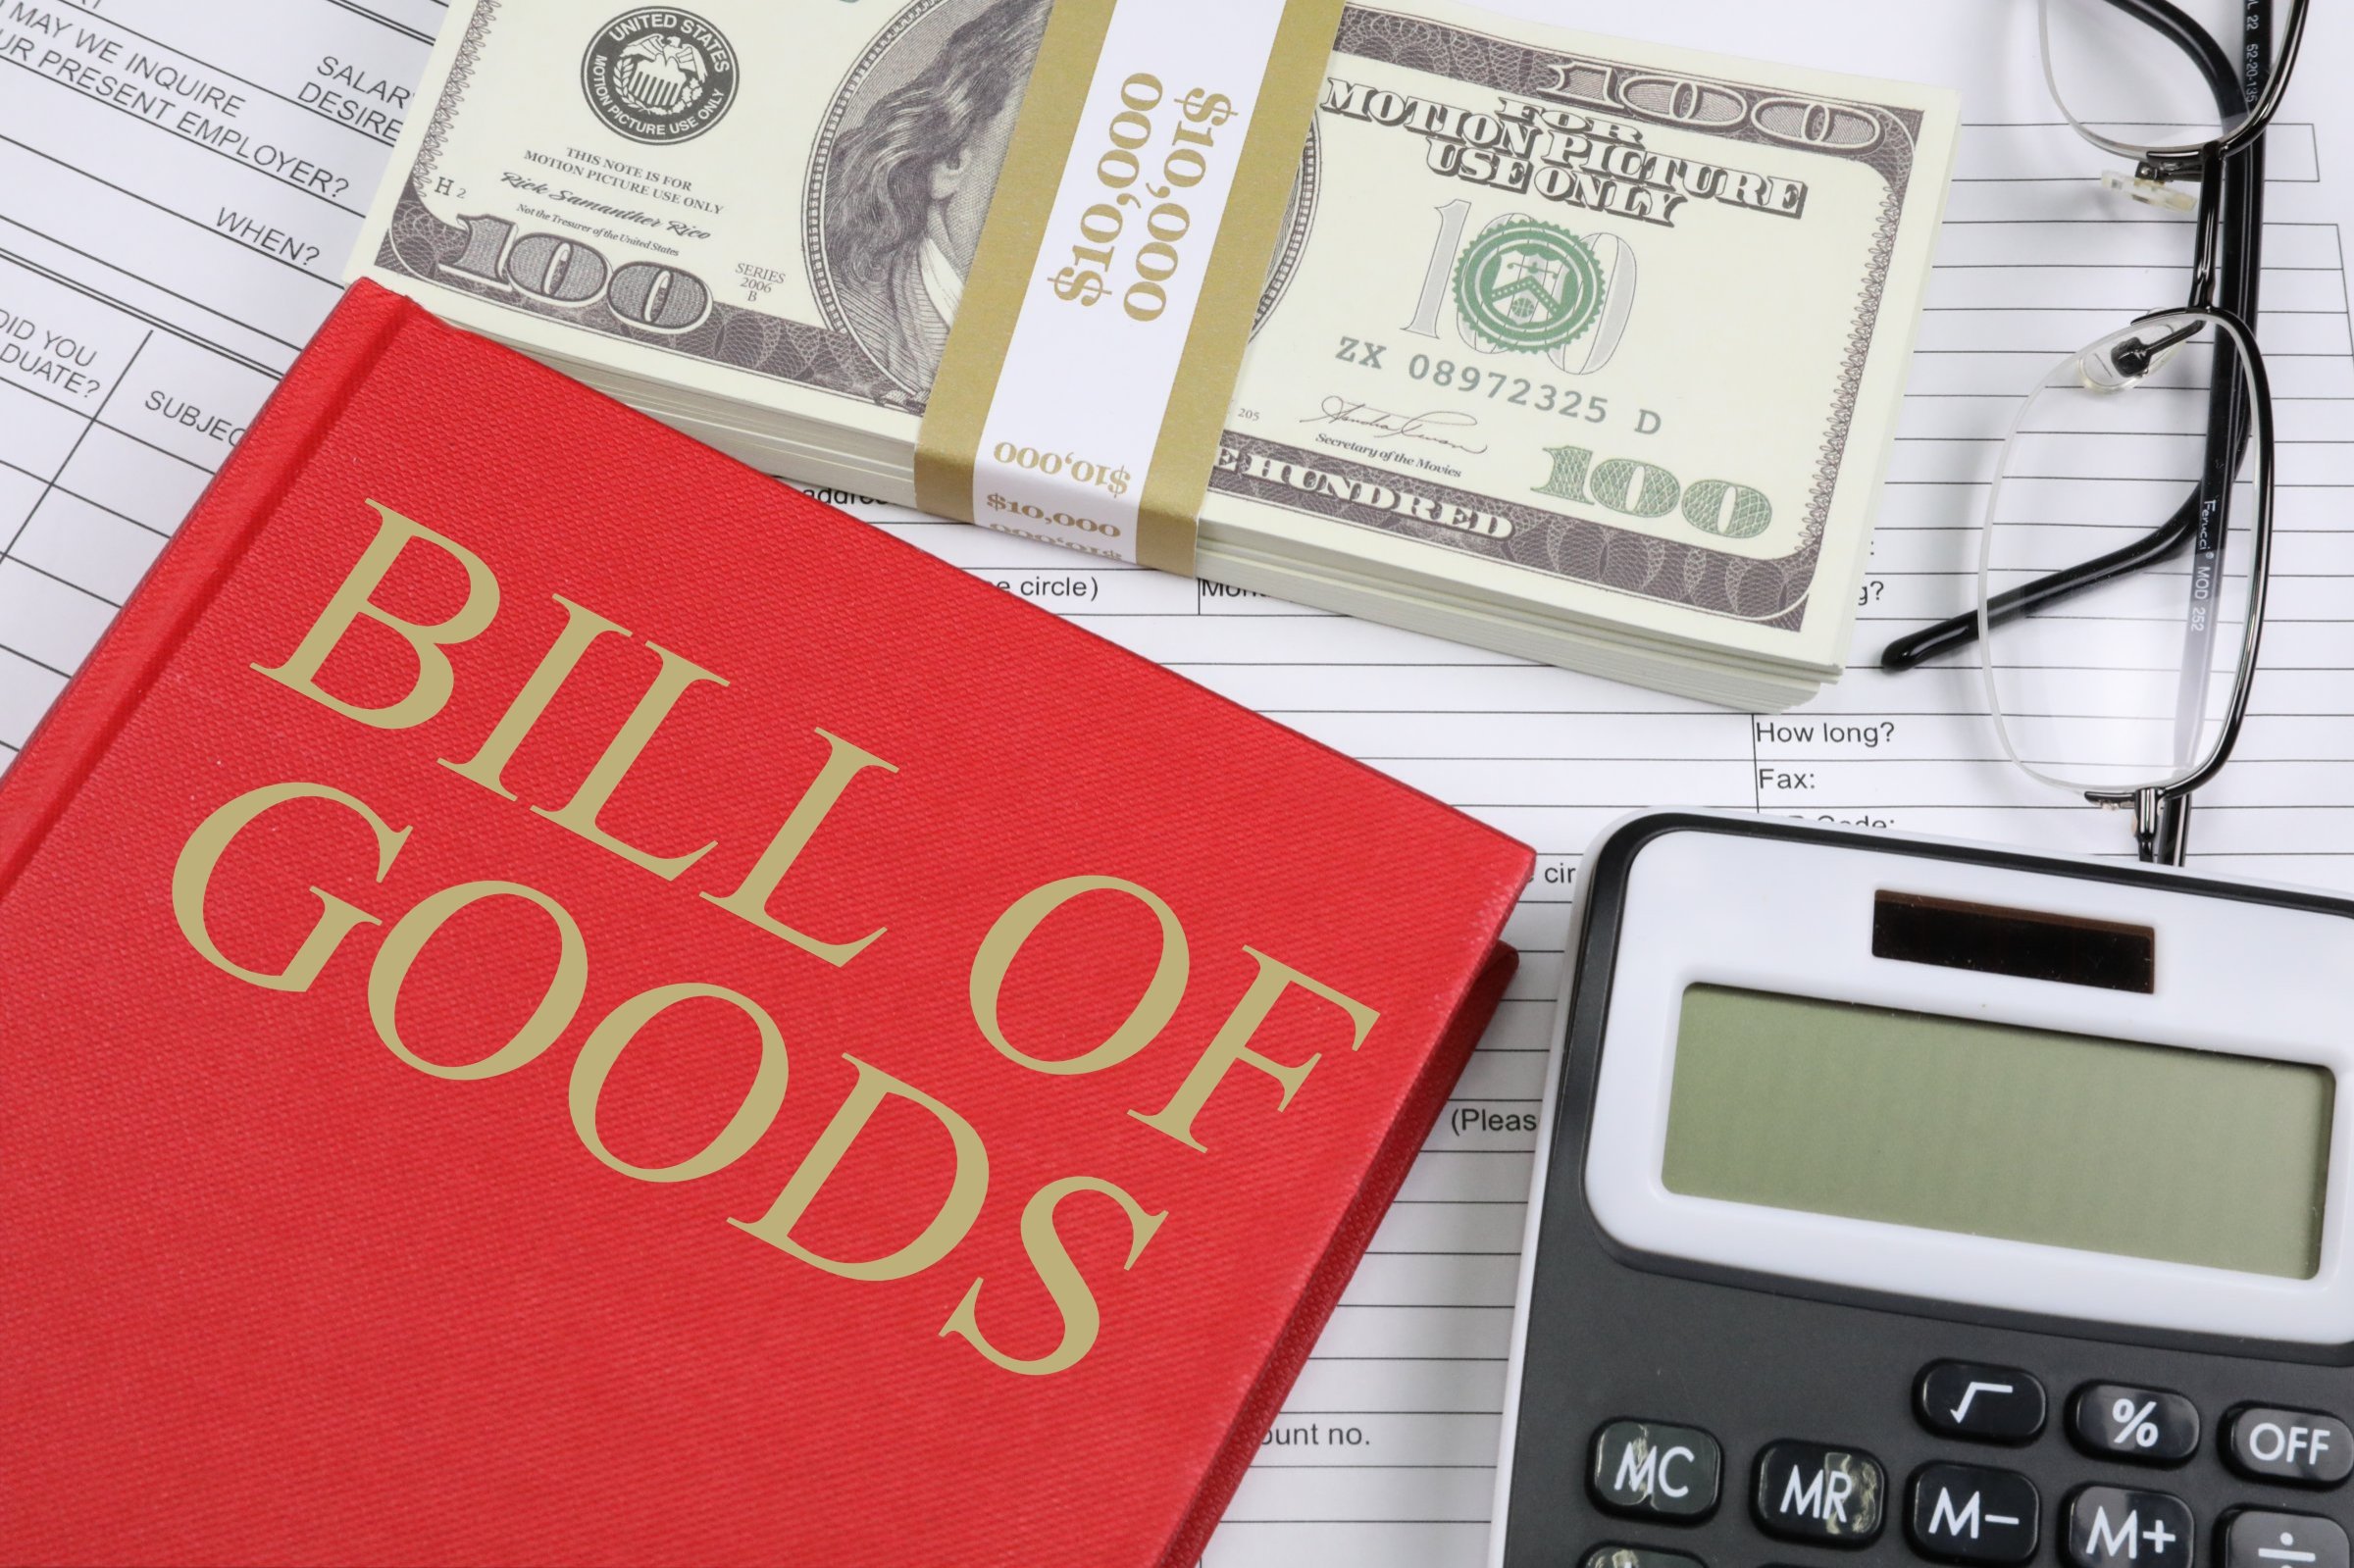 bill of goods